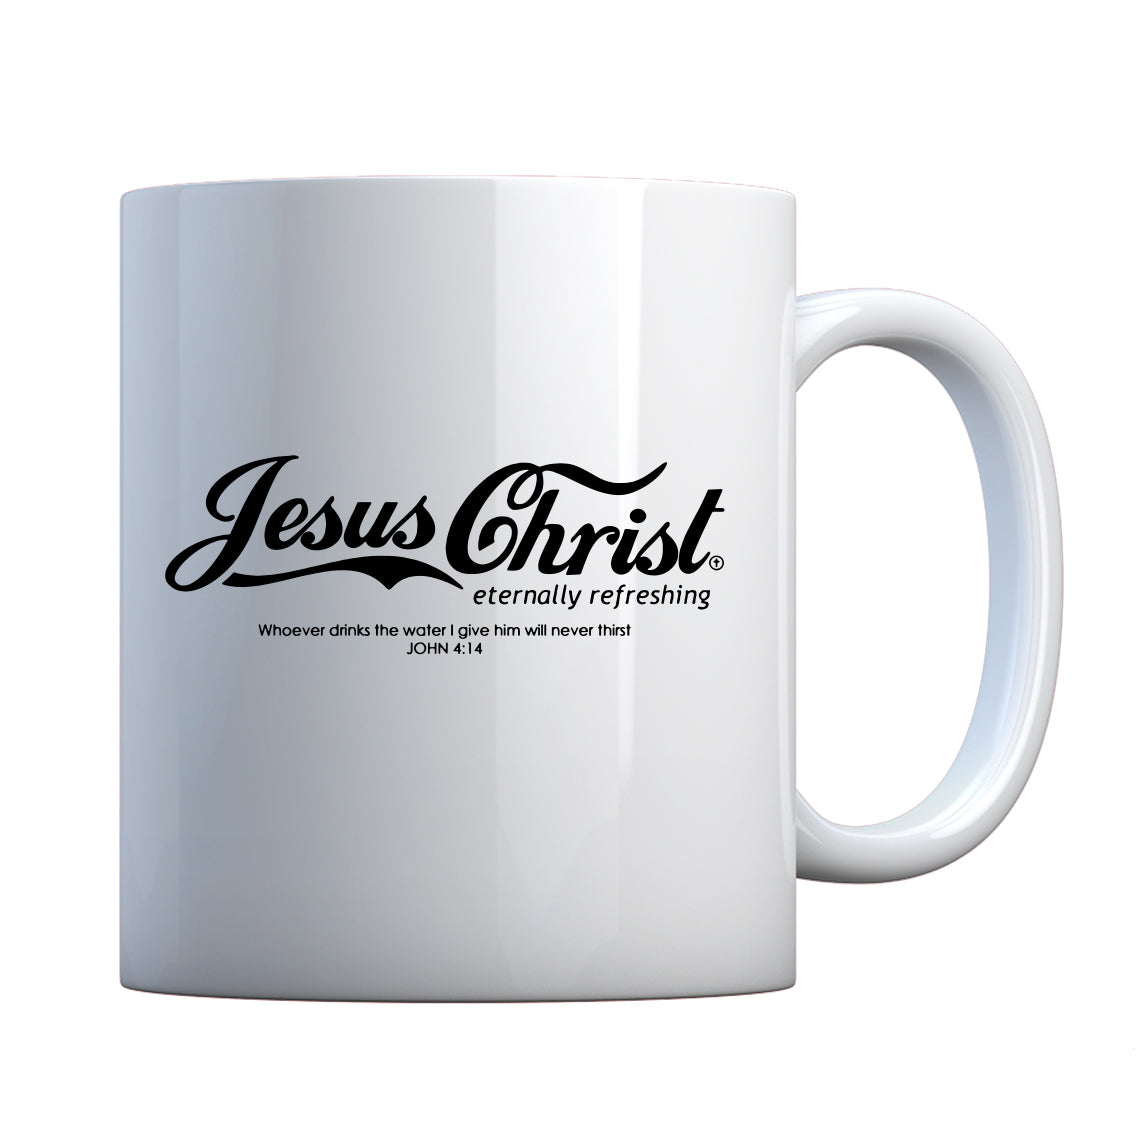 Mug Jesus Christ (was 7007) Ceramic Gift Mug